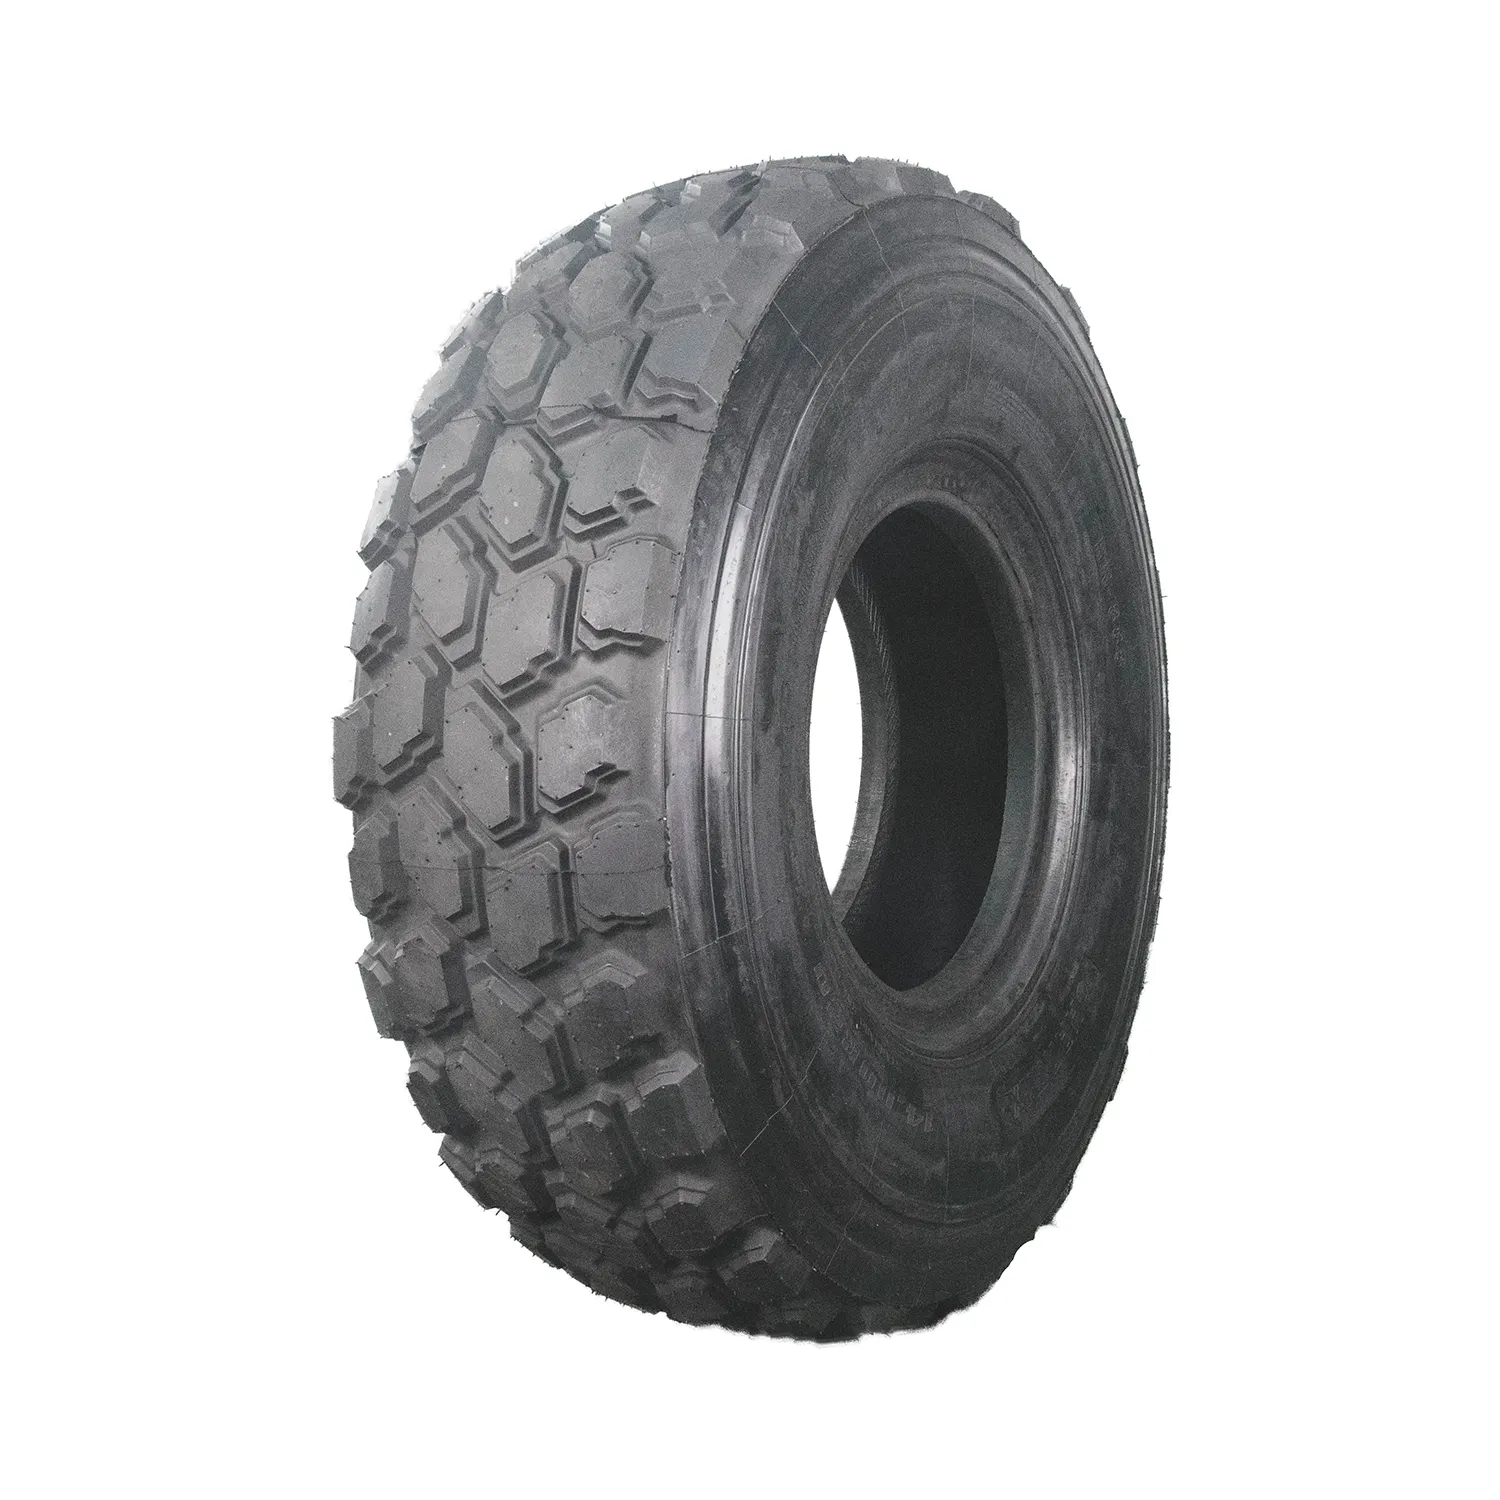 HANMIX 도로 1400R20 20PR 관절 덤퍼 모래 사막 OTR 방사형 타이어 타이어